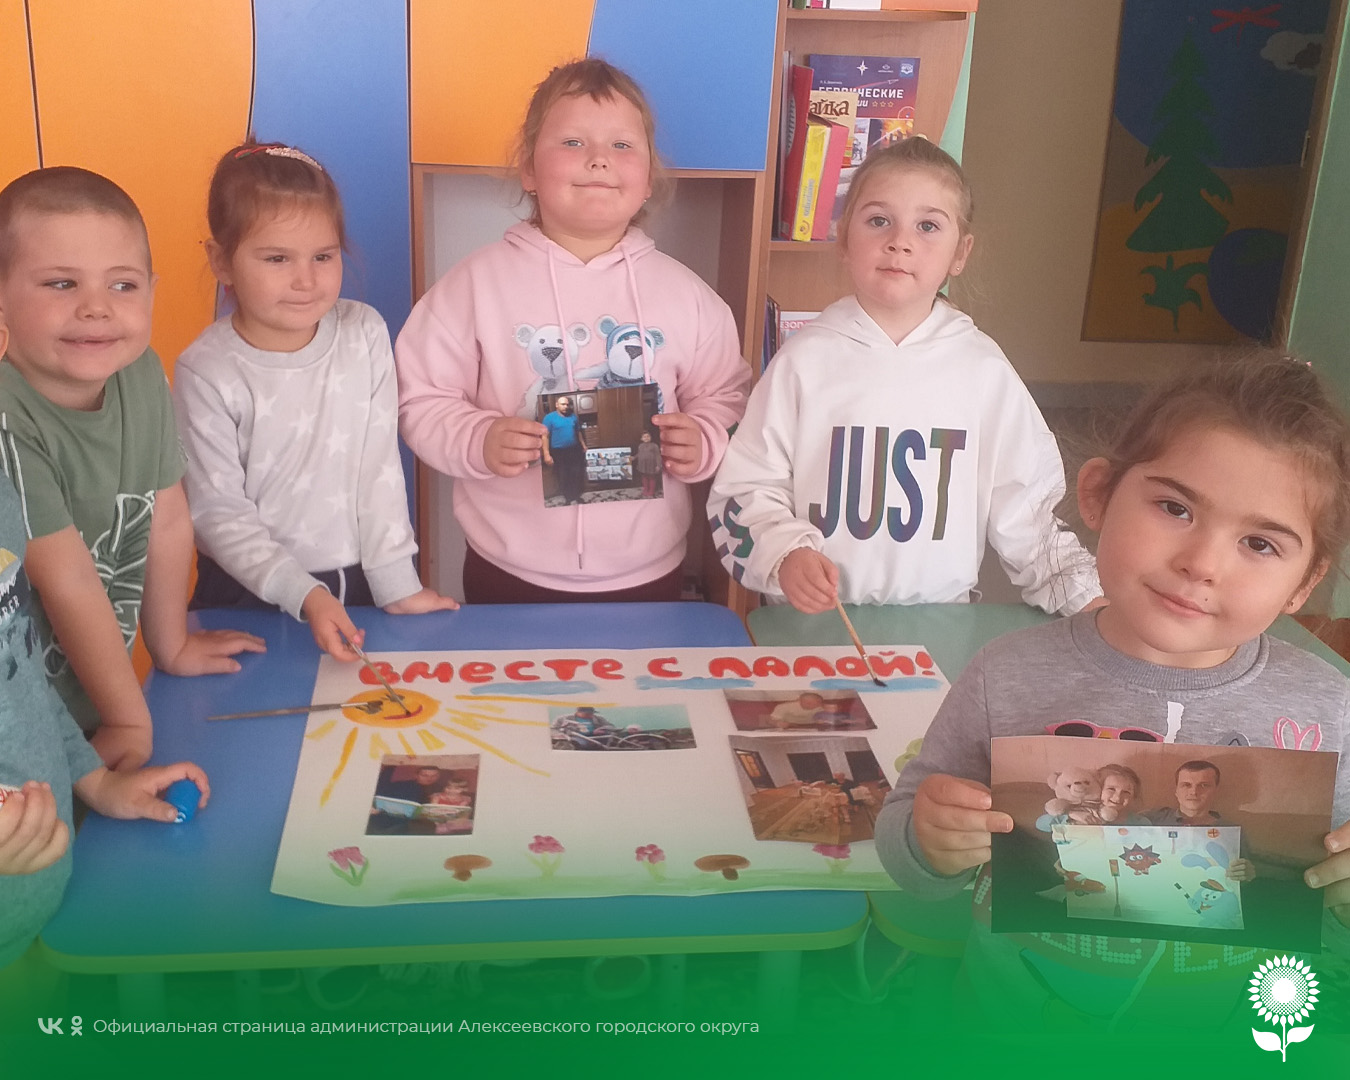 В детских садах Алексеевского городского округа прошли мероприятия, посвященные дню Отца